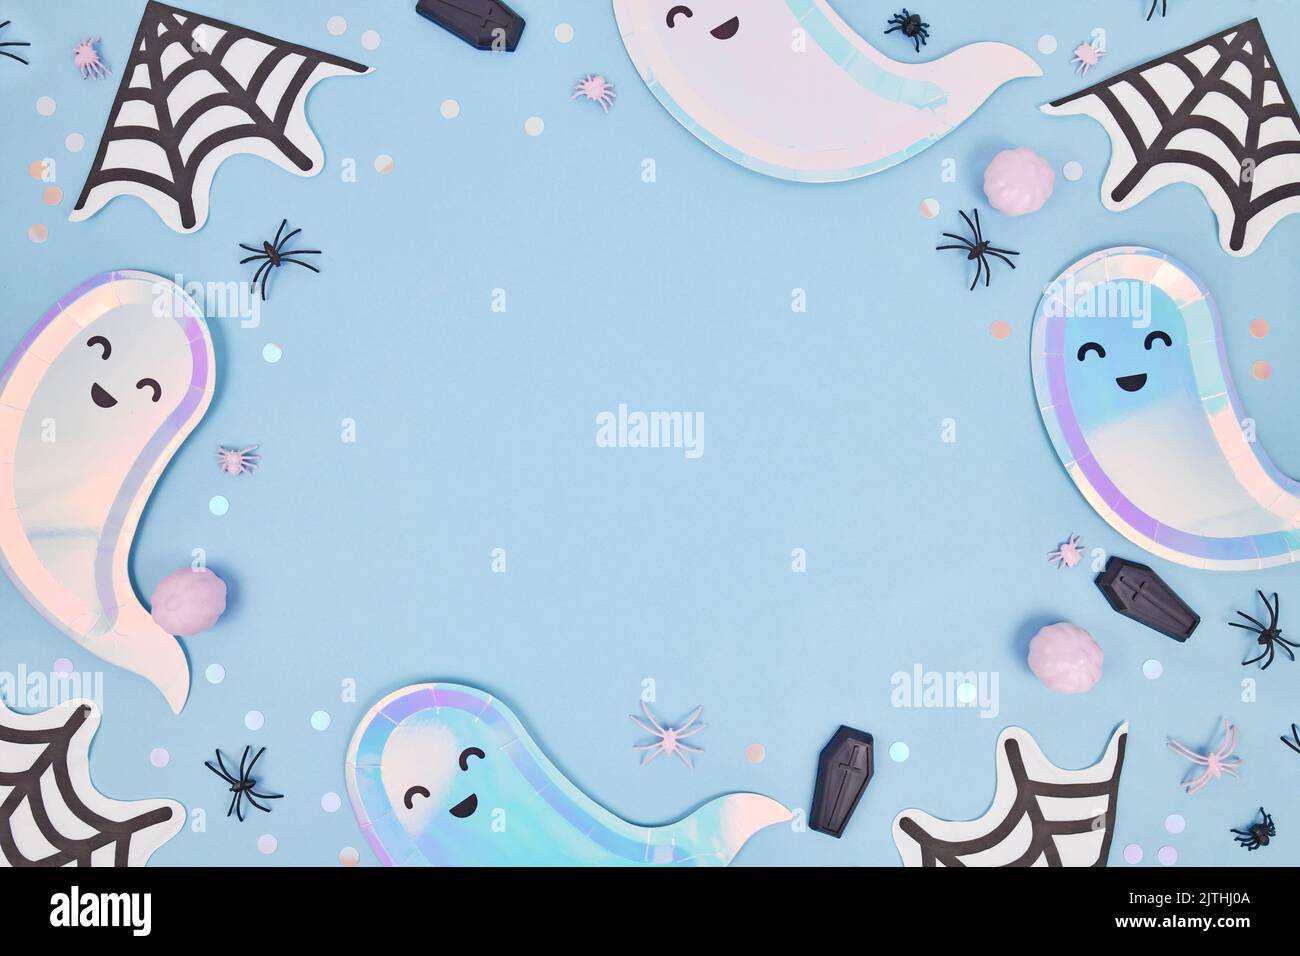 Niedlicher, pastellfarbener Halloween Partyrahmen mit geisterförmigen Tellern, Spinnennetz Servietten und Konfetti auf blauem Hintergrund Stockfoto